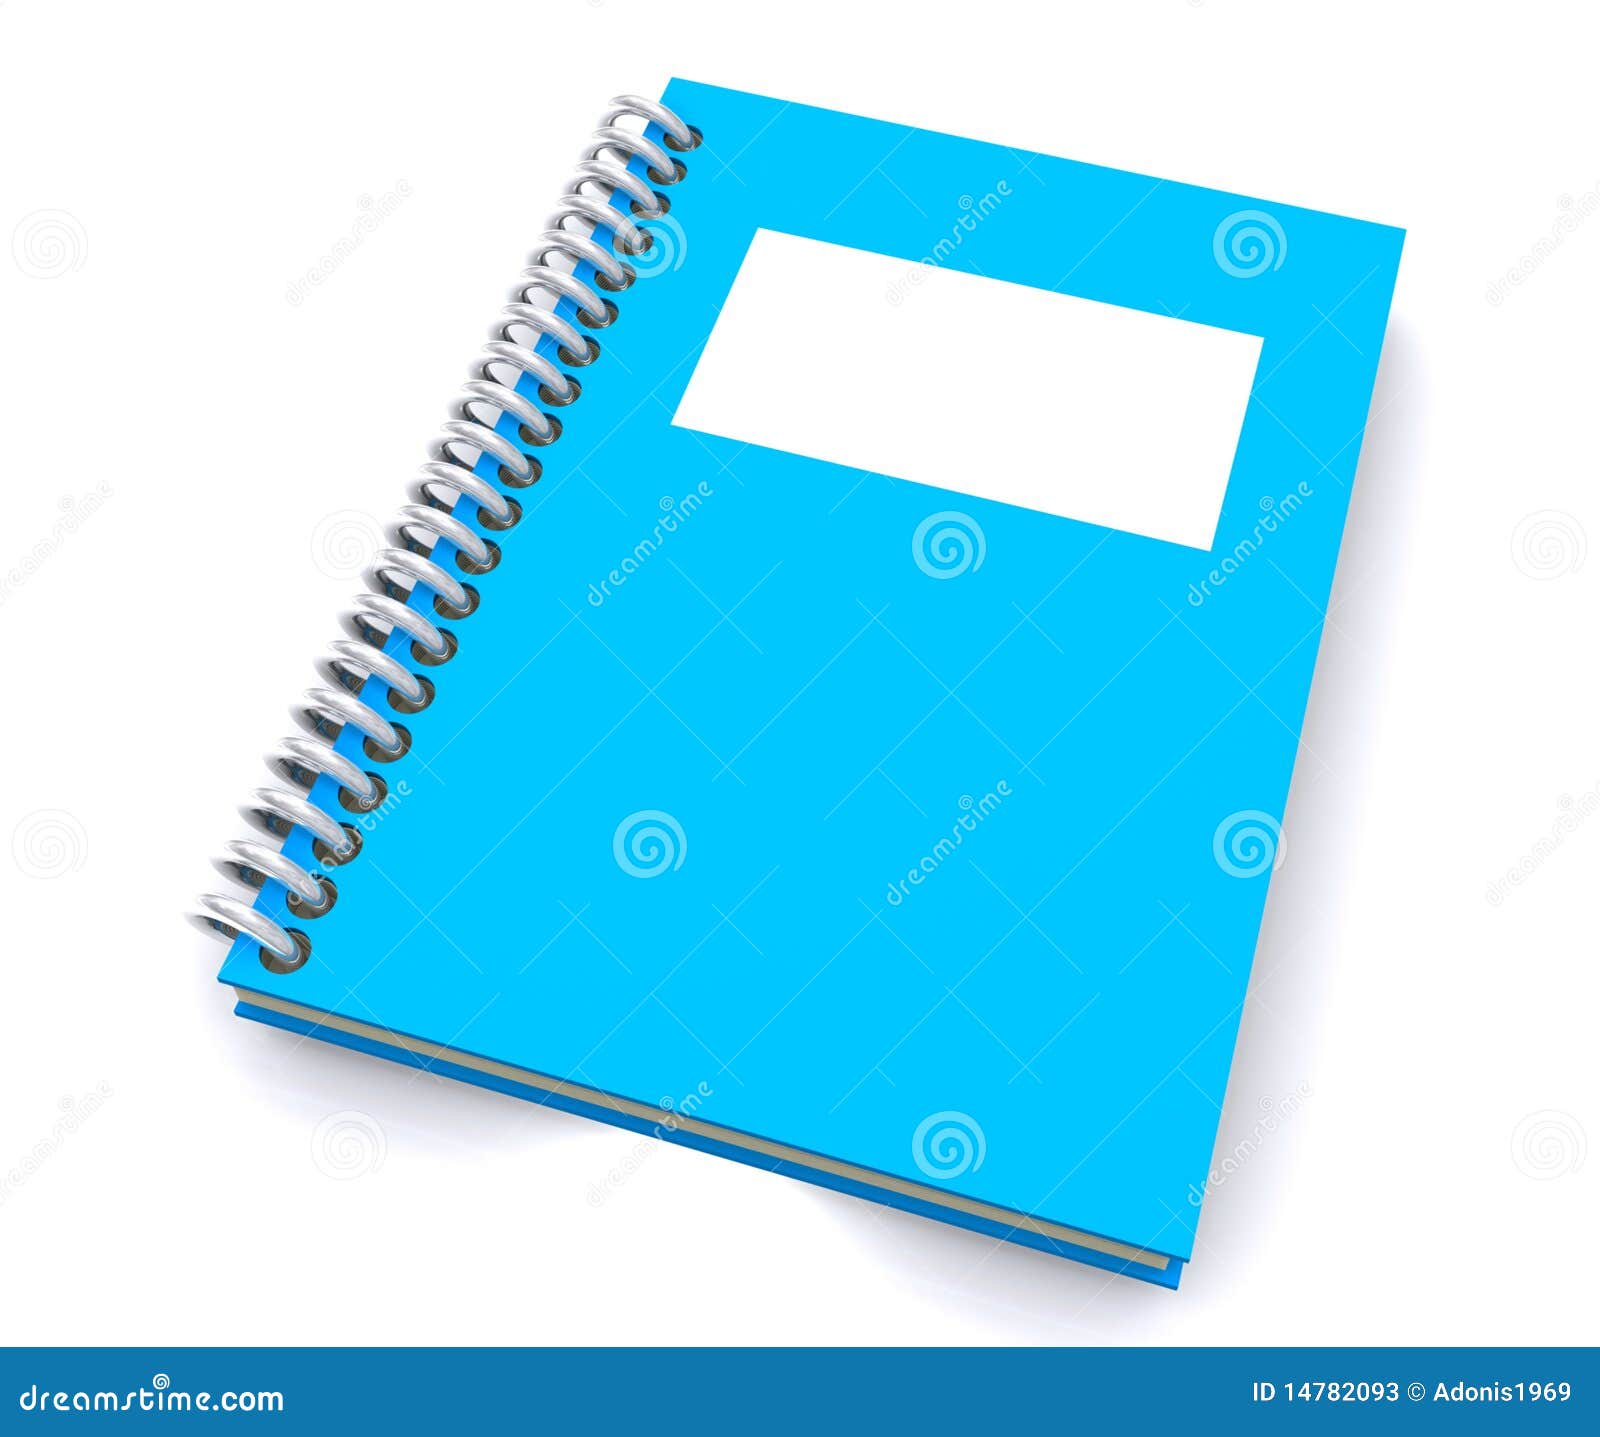 blue spiral notebook